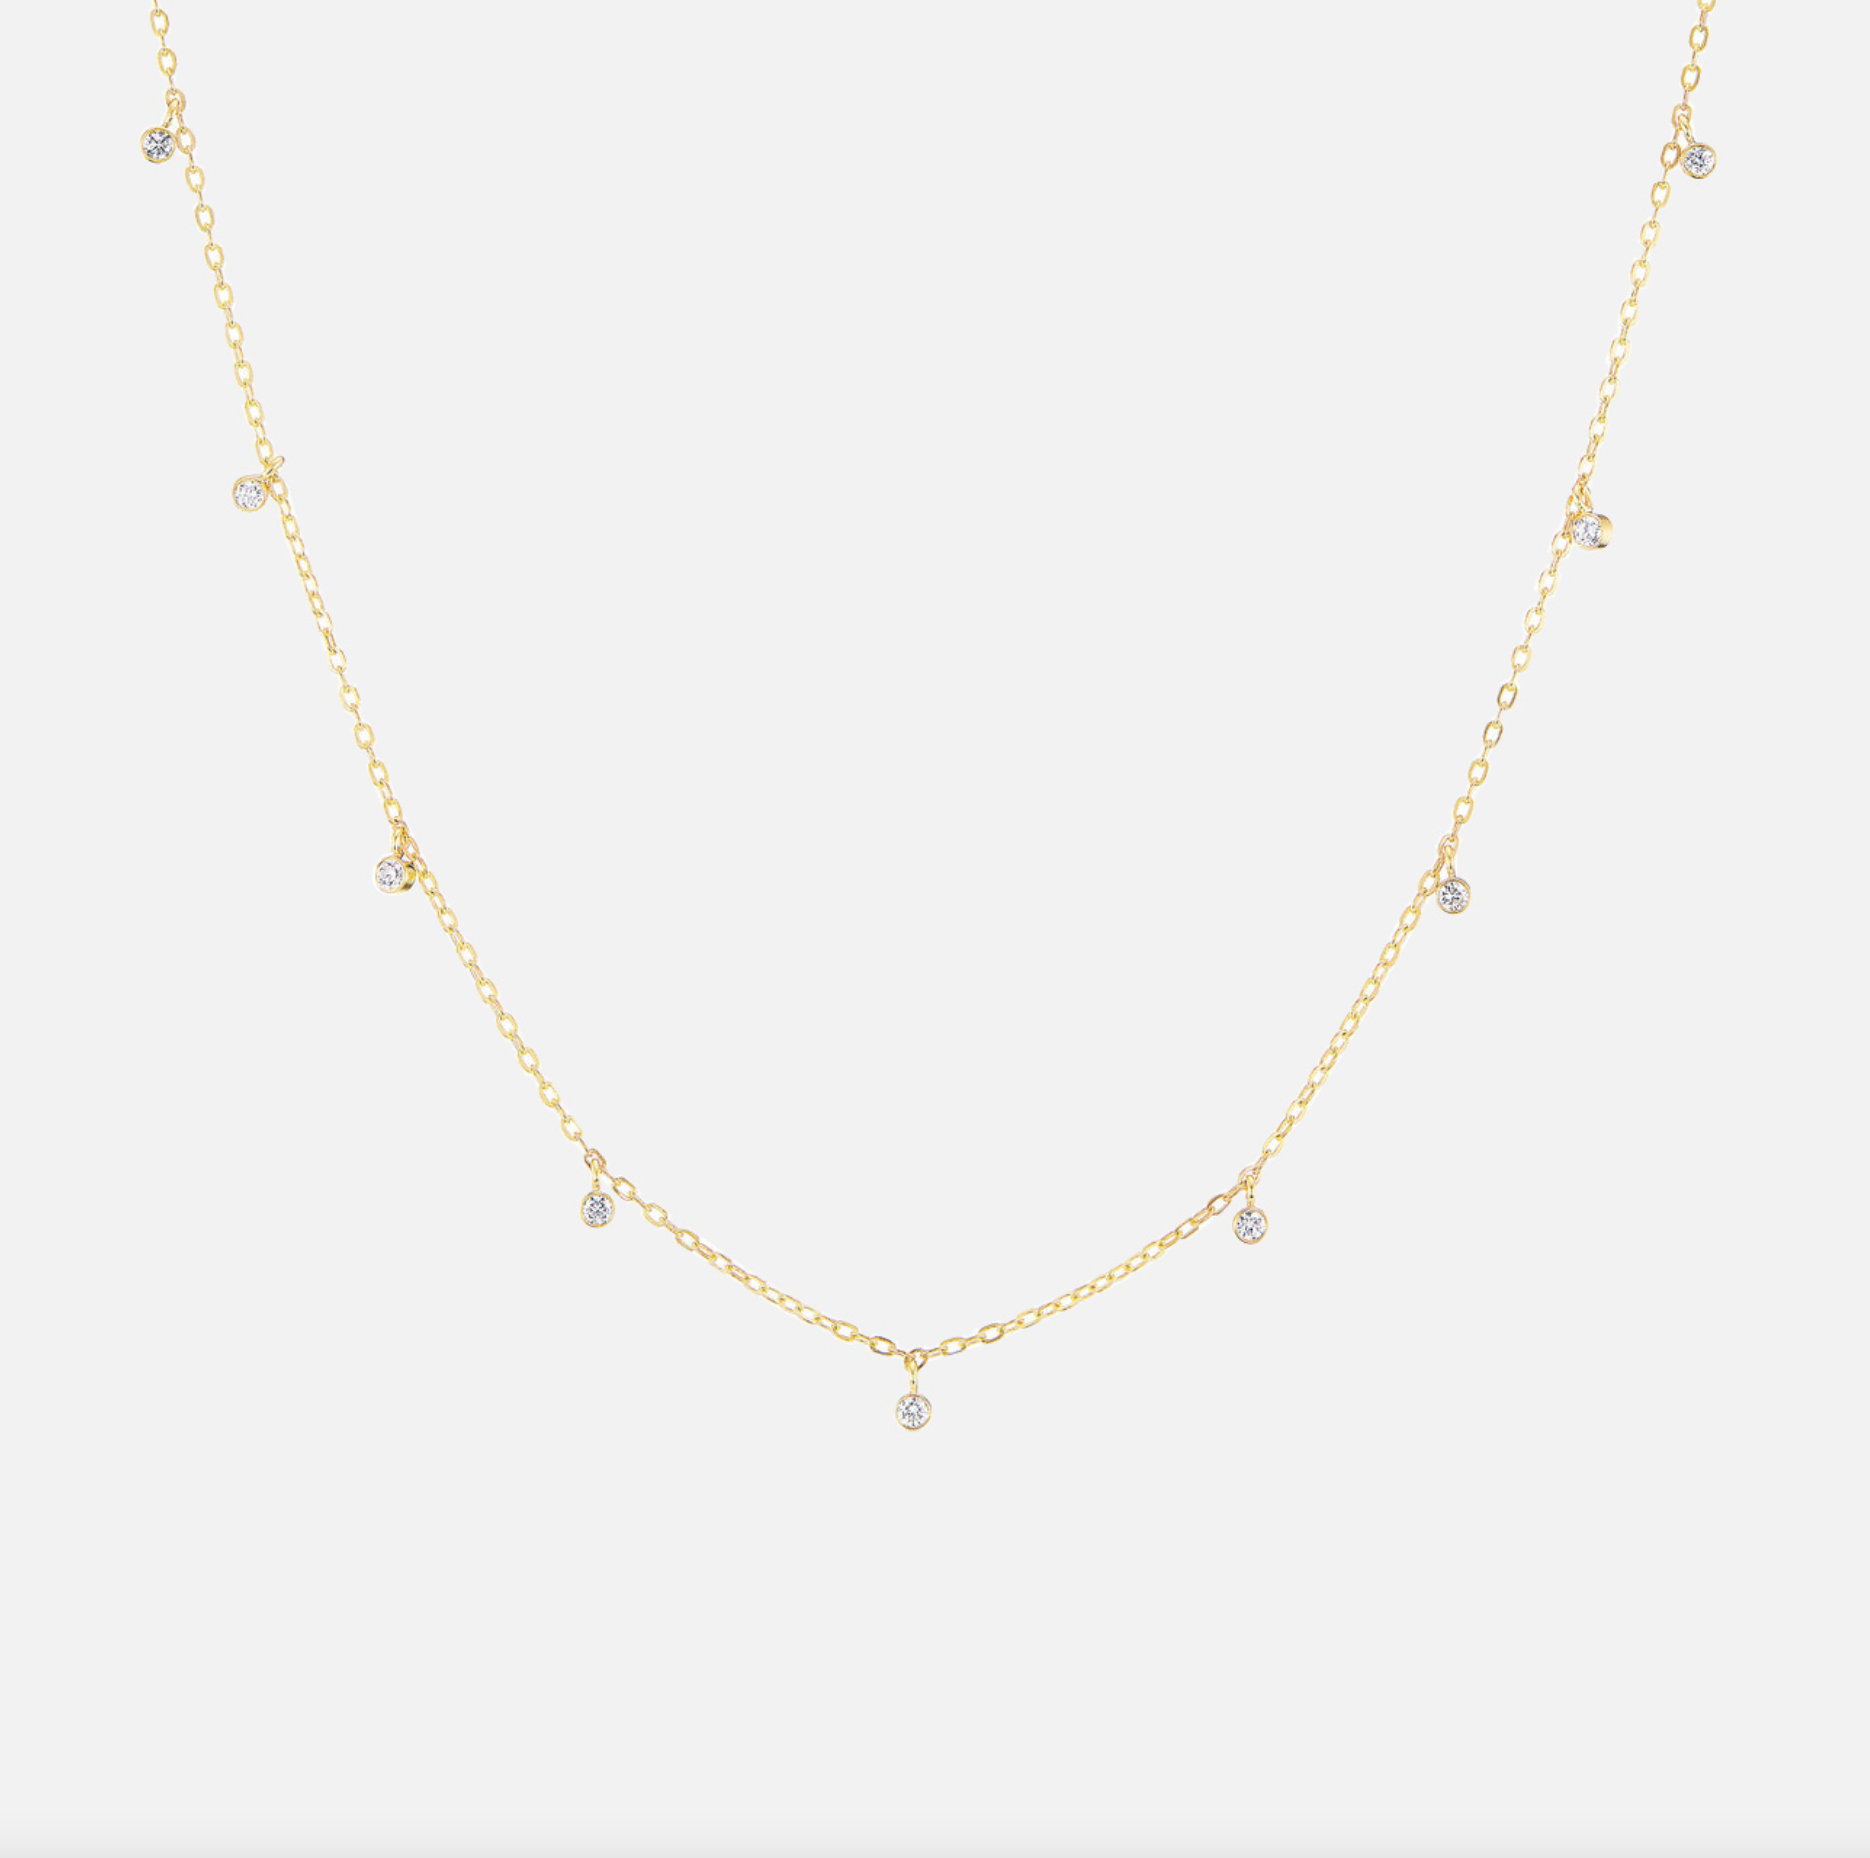 Nine Diamond Confetti Necklace